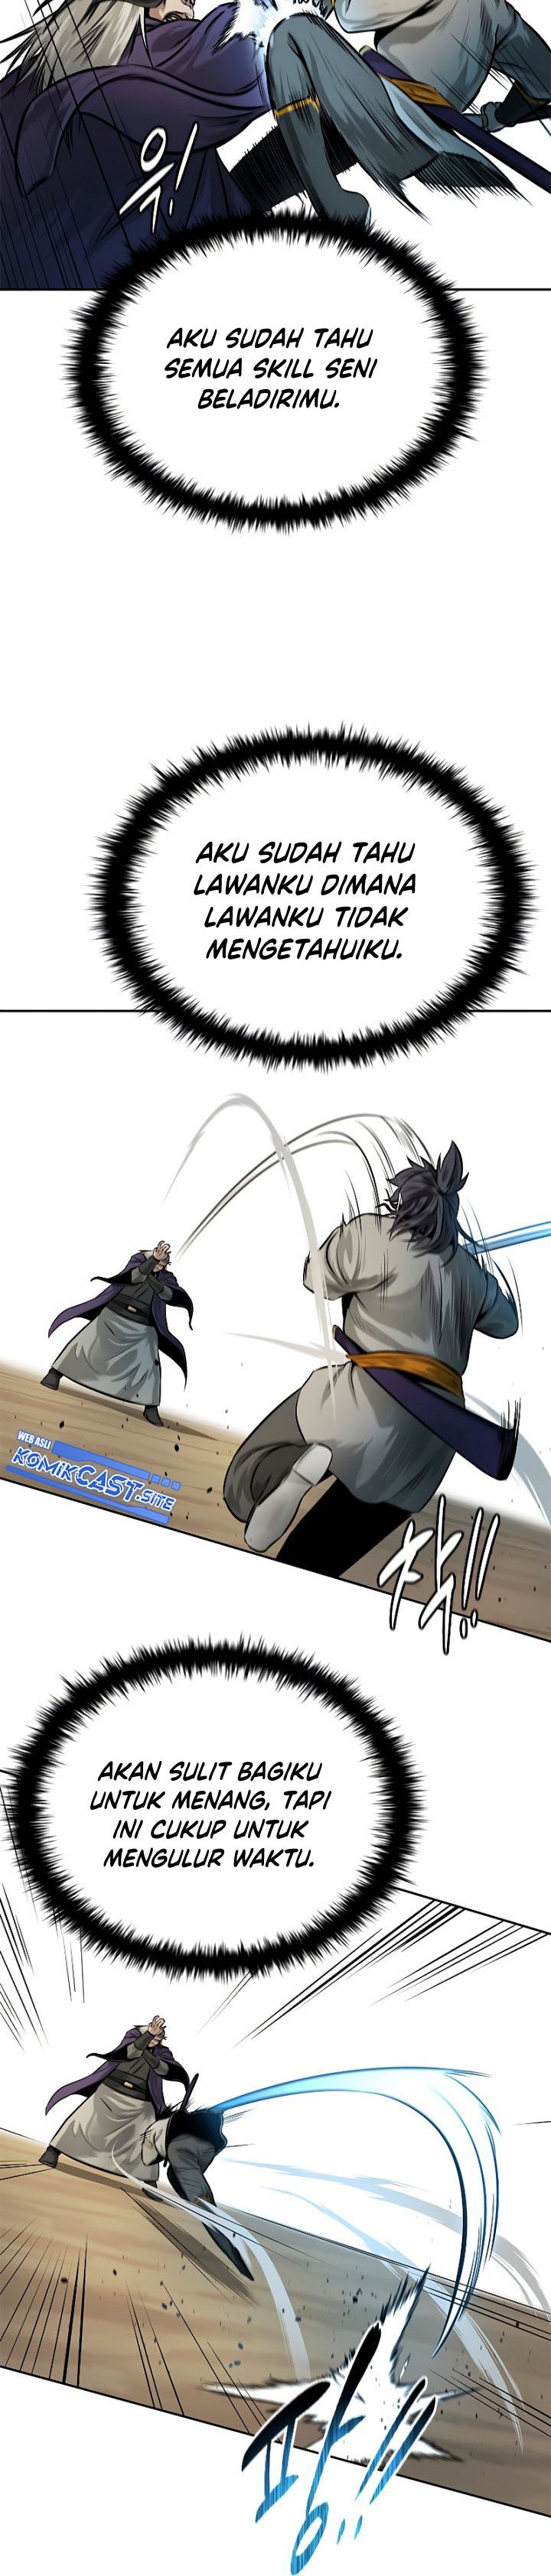 Moon-Shadow Sword Emperor Chapter 13 - 385